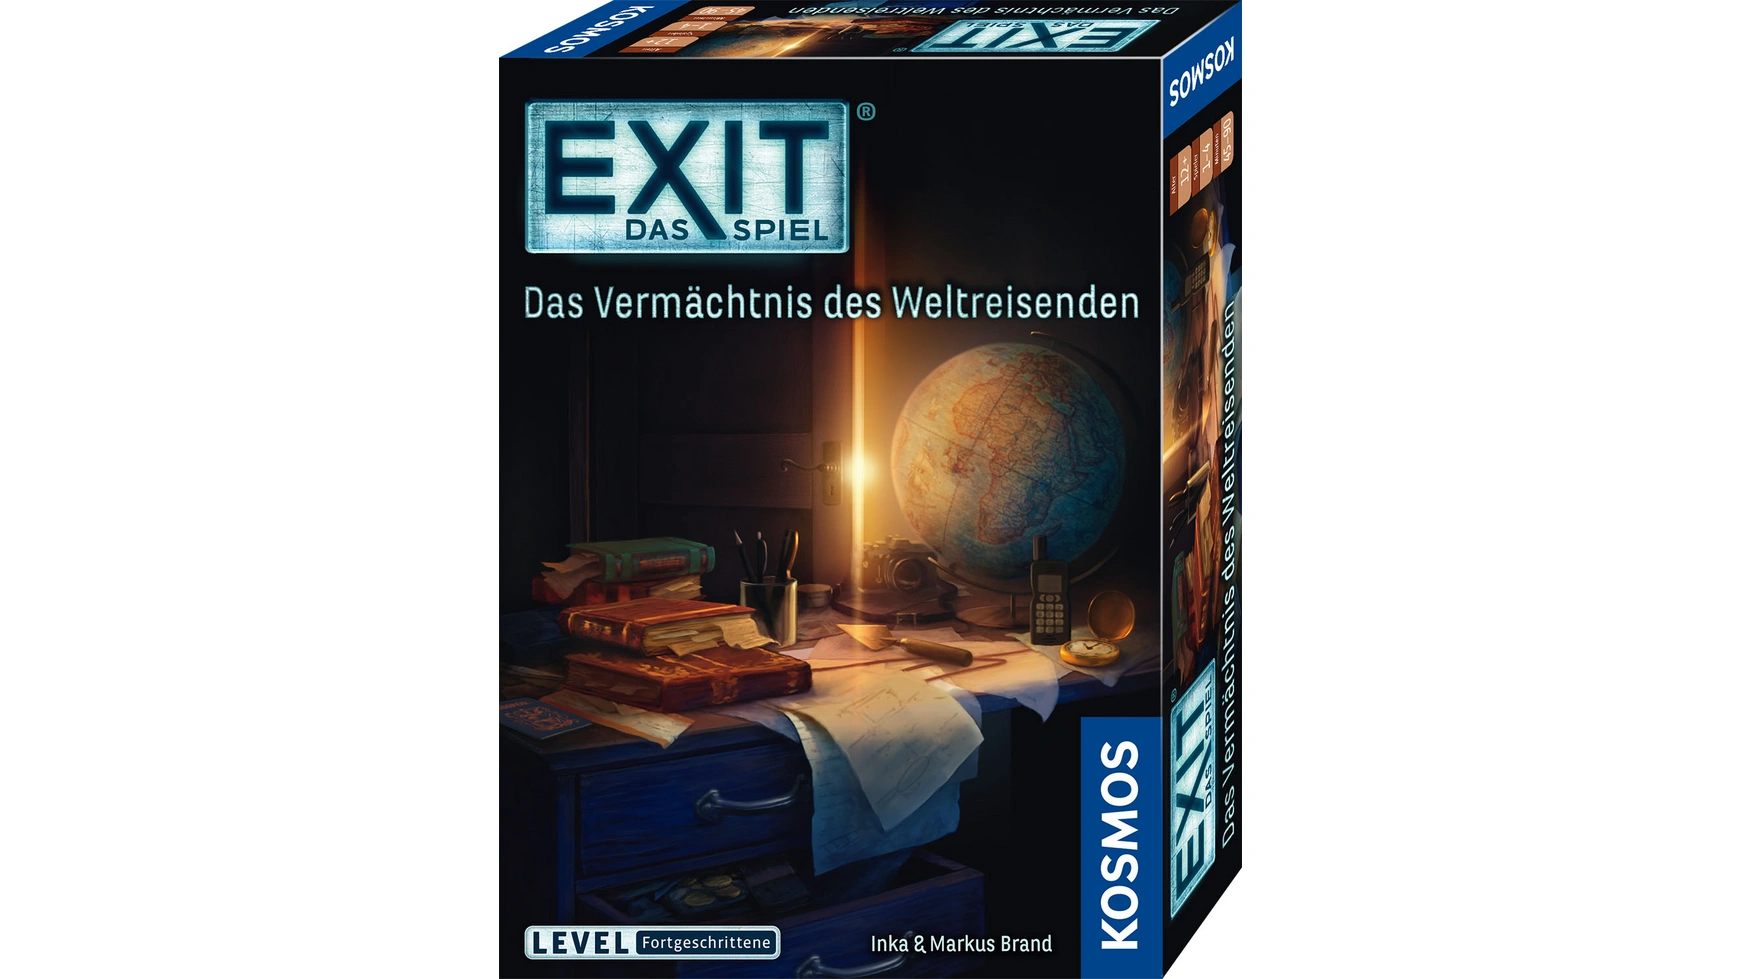 Exit игра: наследие путешественника по миру, уровень: продвинутый Kosmos exit west